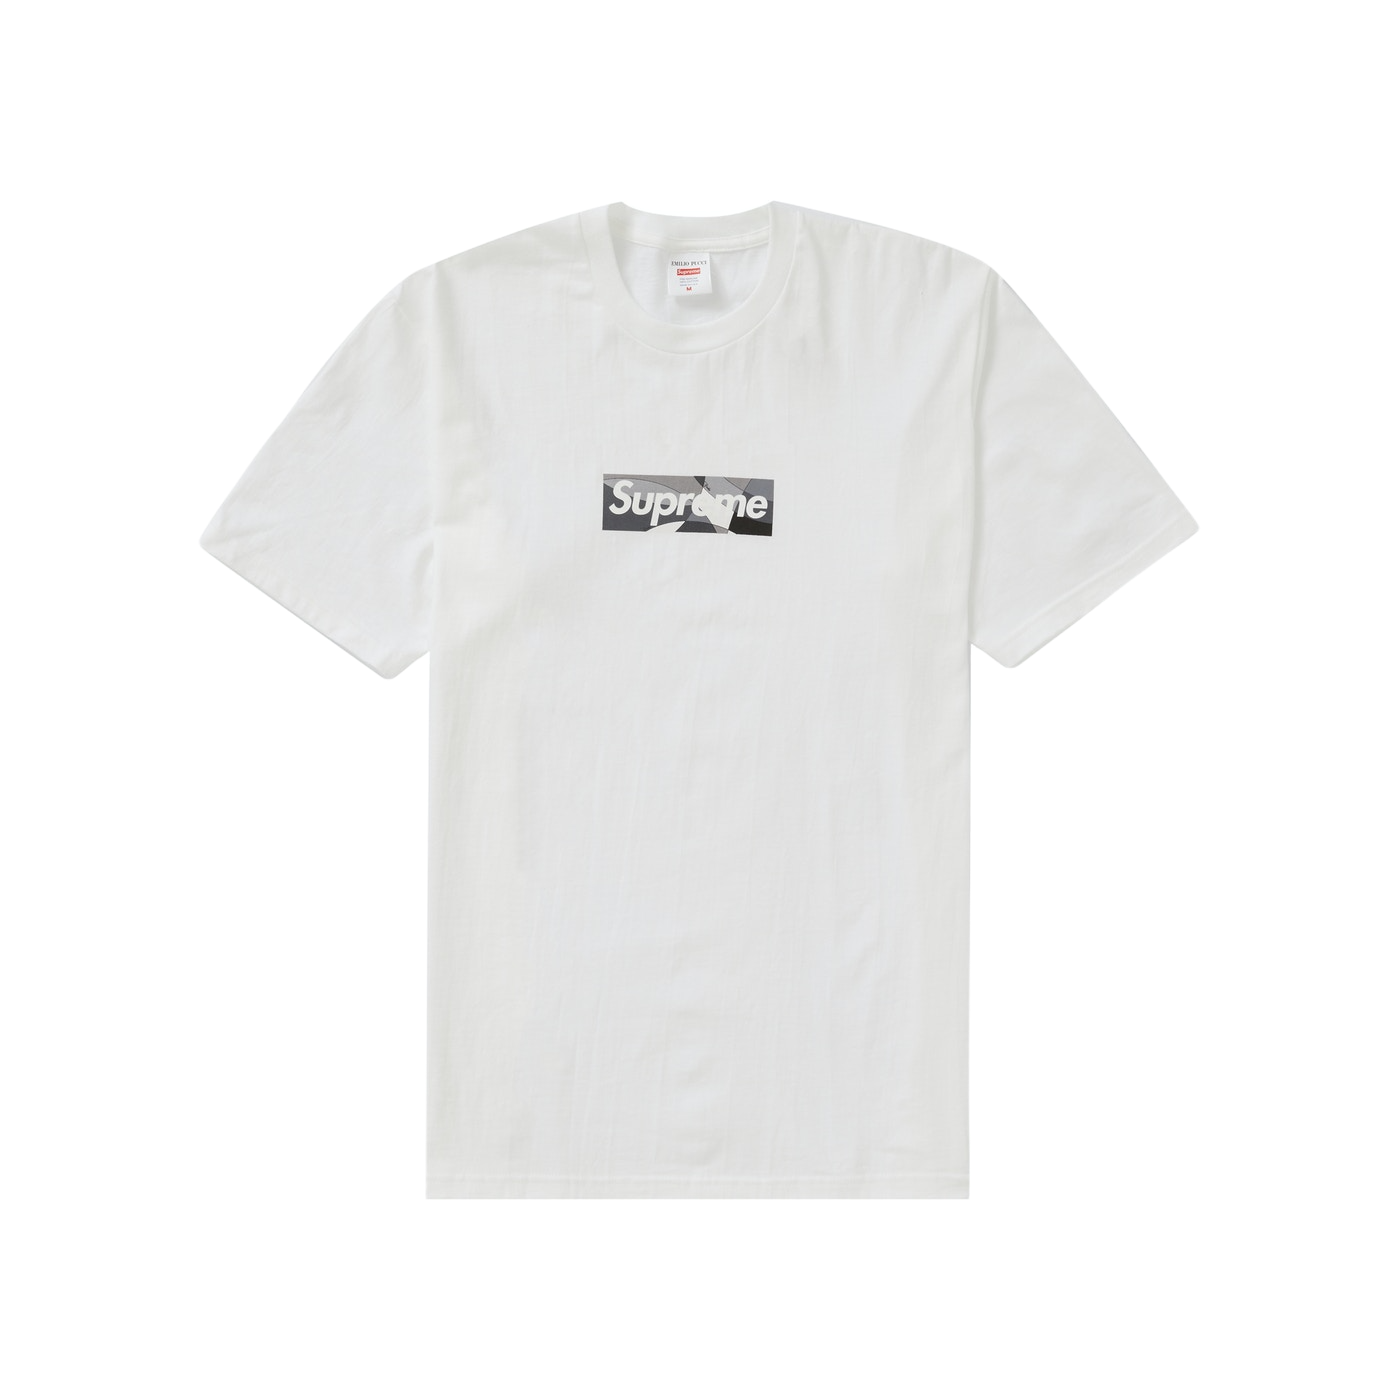 Supreme x Emilio Pucci Box Logo Crew Neck T-Shirt